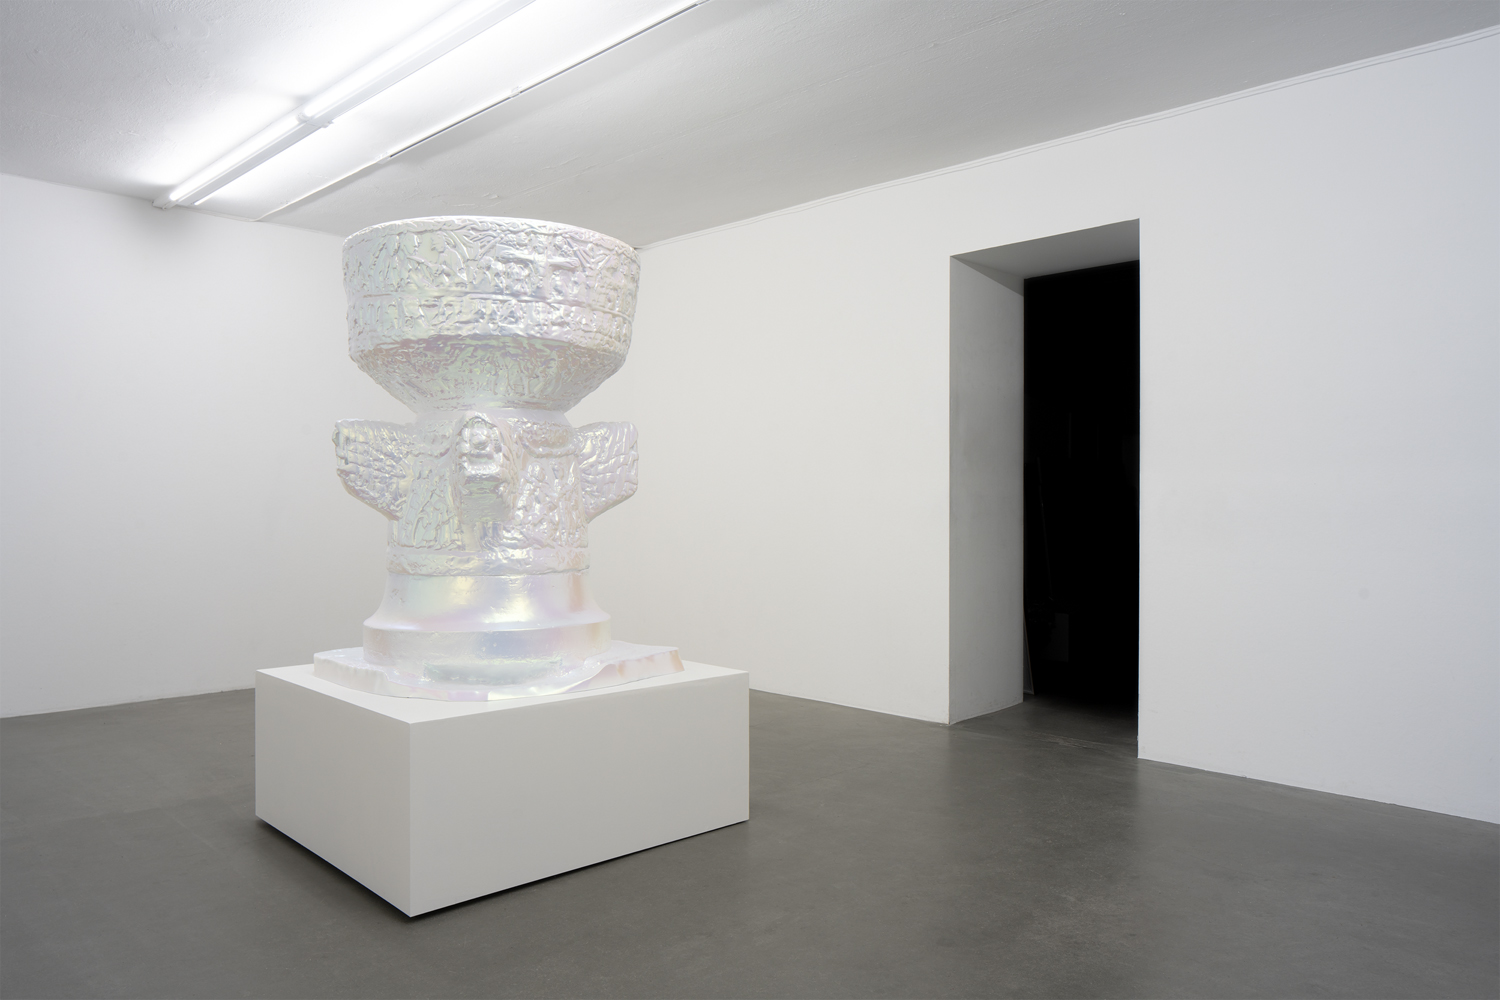 Konstnären Juri Markkula visar 3D printade object i utställningen Secular Light på Galleri Thomassen